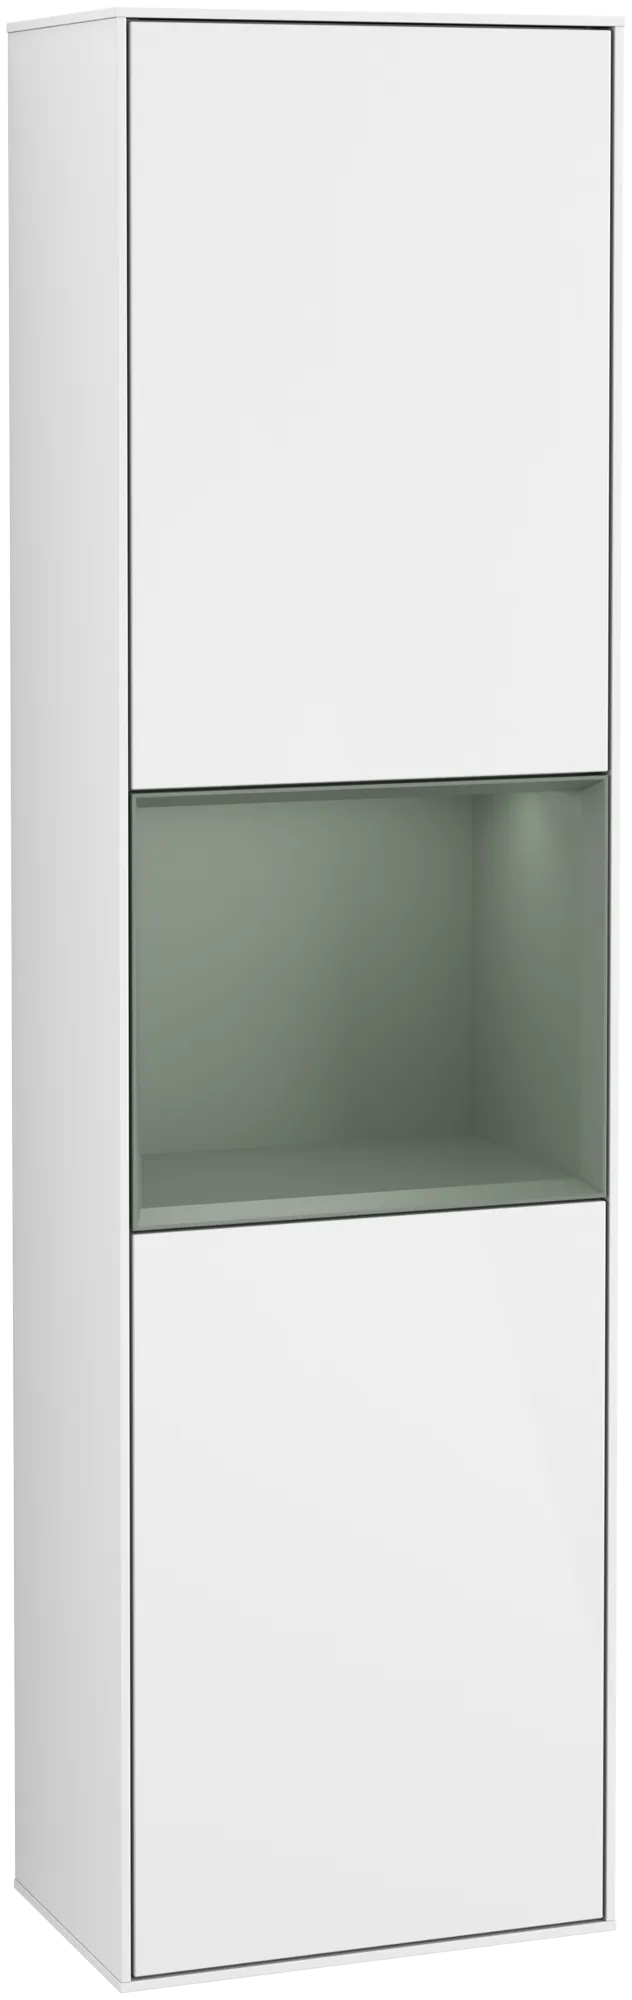 Bild von VILLEROY BOCH Finion Hochschrank, mit Beleuchtung, 2 Türen, 418 x 1516 x 270 mm, Glossy White Lacquer / Olive Matt Lacquer #G470GMGF